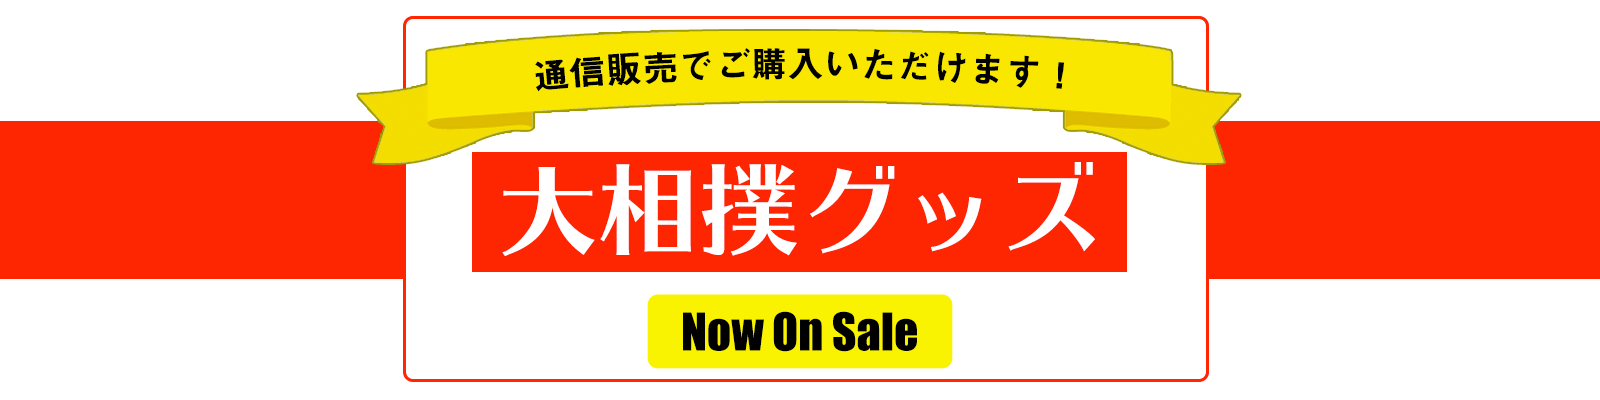 大相撲グッズ - 日本相撲協会公式サイト